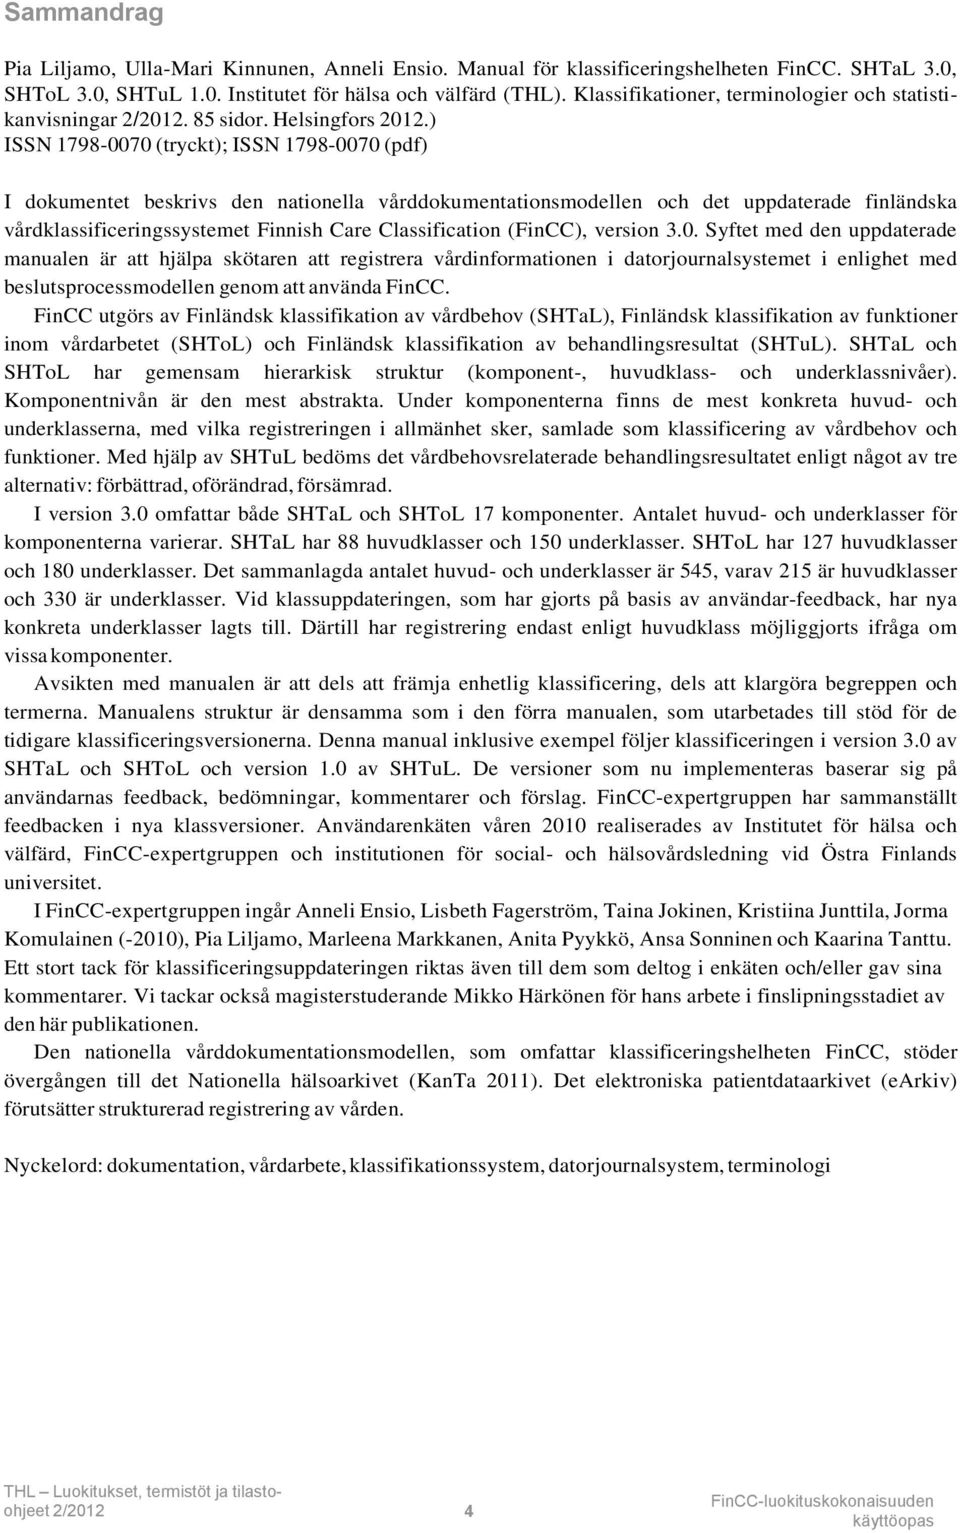 ) ISSN 1798-0070 (tryckt); ISSN 1798-0070 (pdf) I dokumentet beskrivs den nationella vårddokumentationsmodellen och det uppdaterade finländska vårdklassificeringssystemet Finnish Care Classification